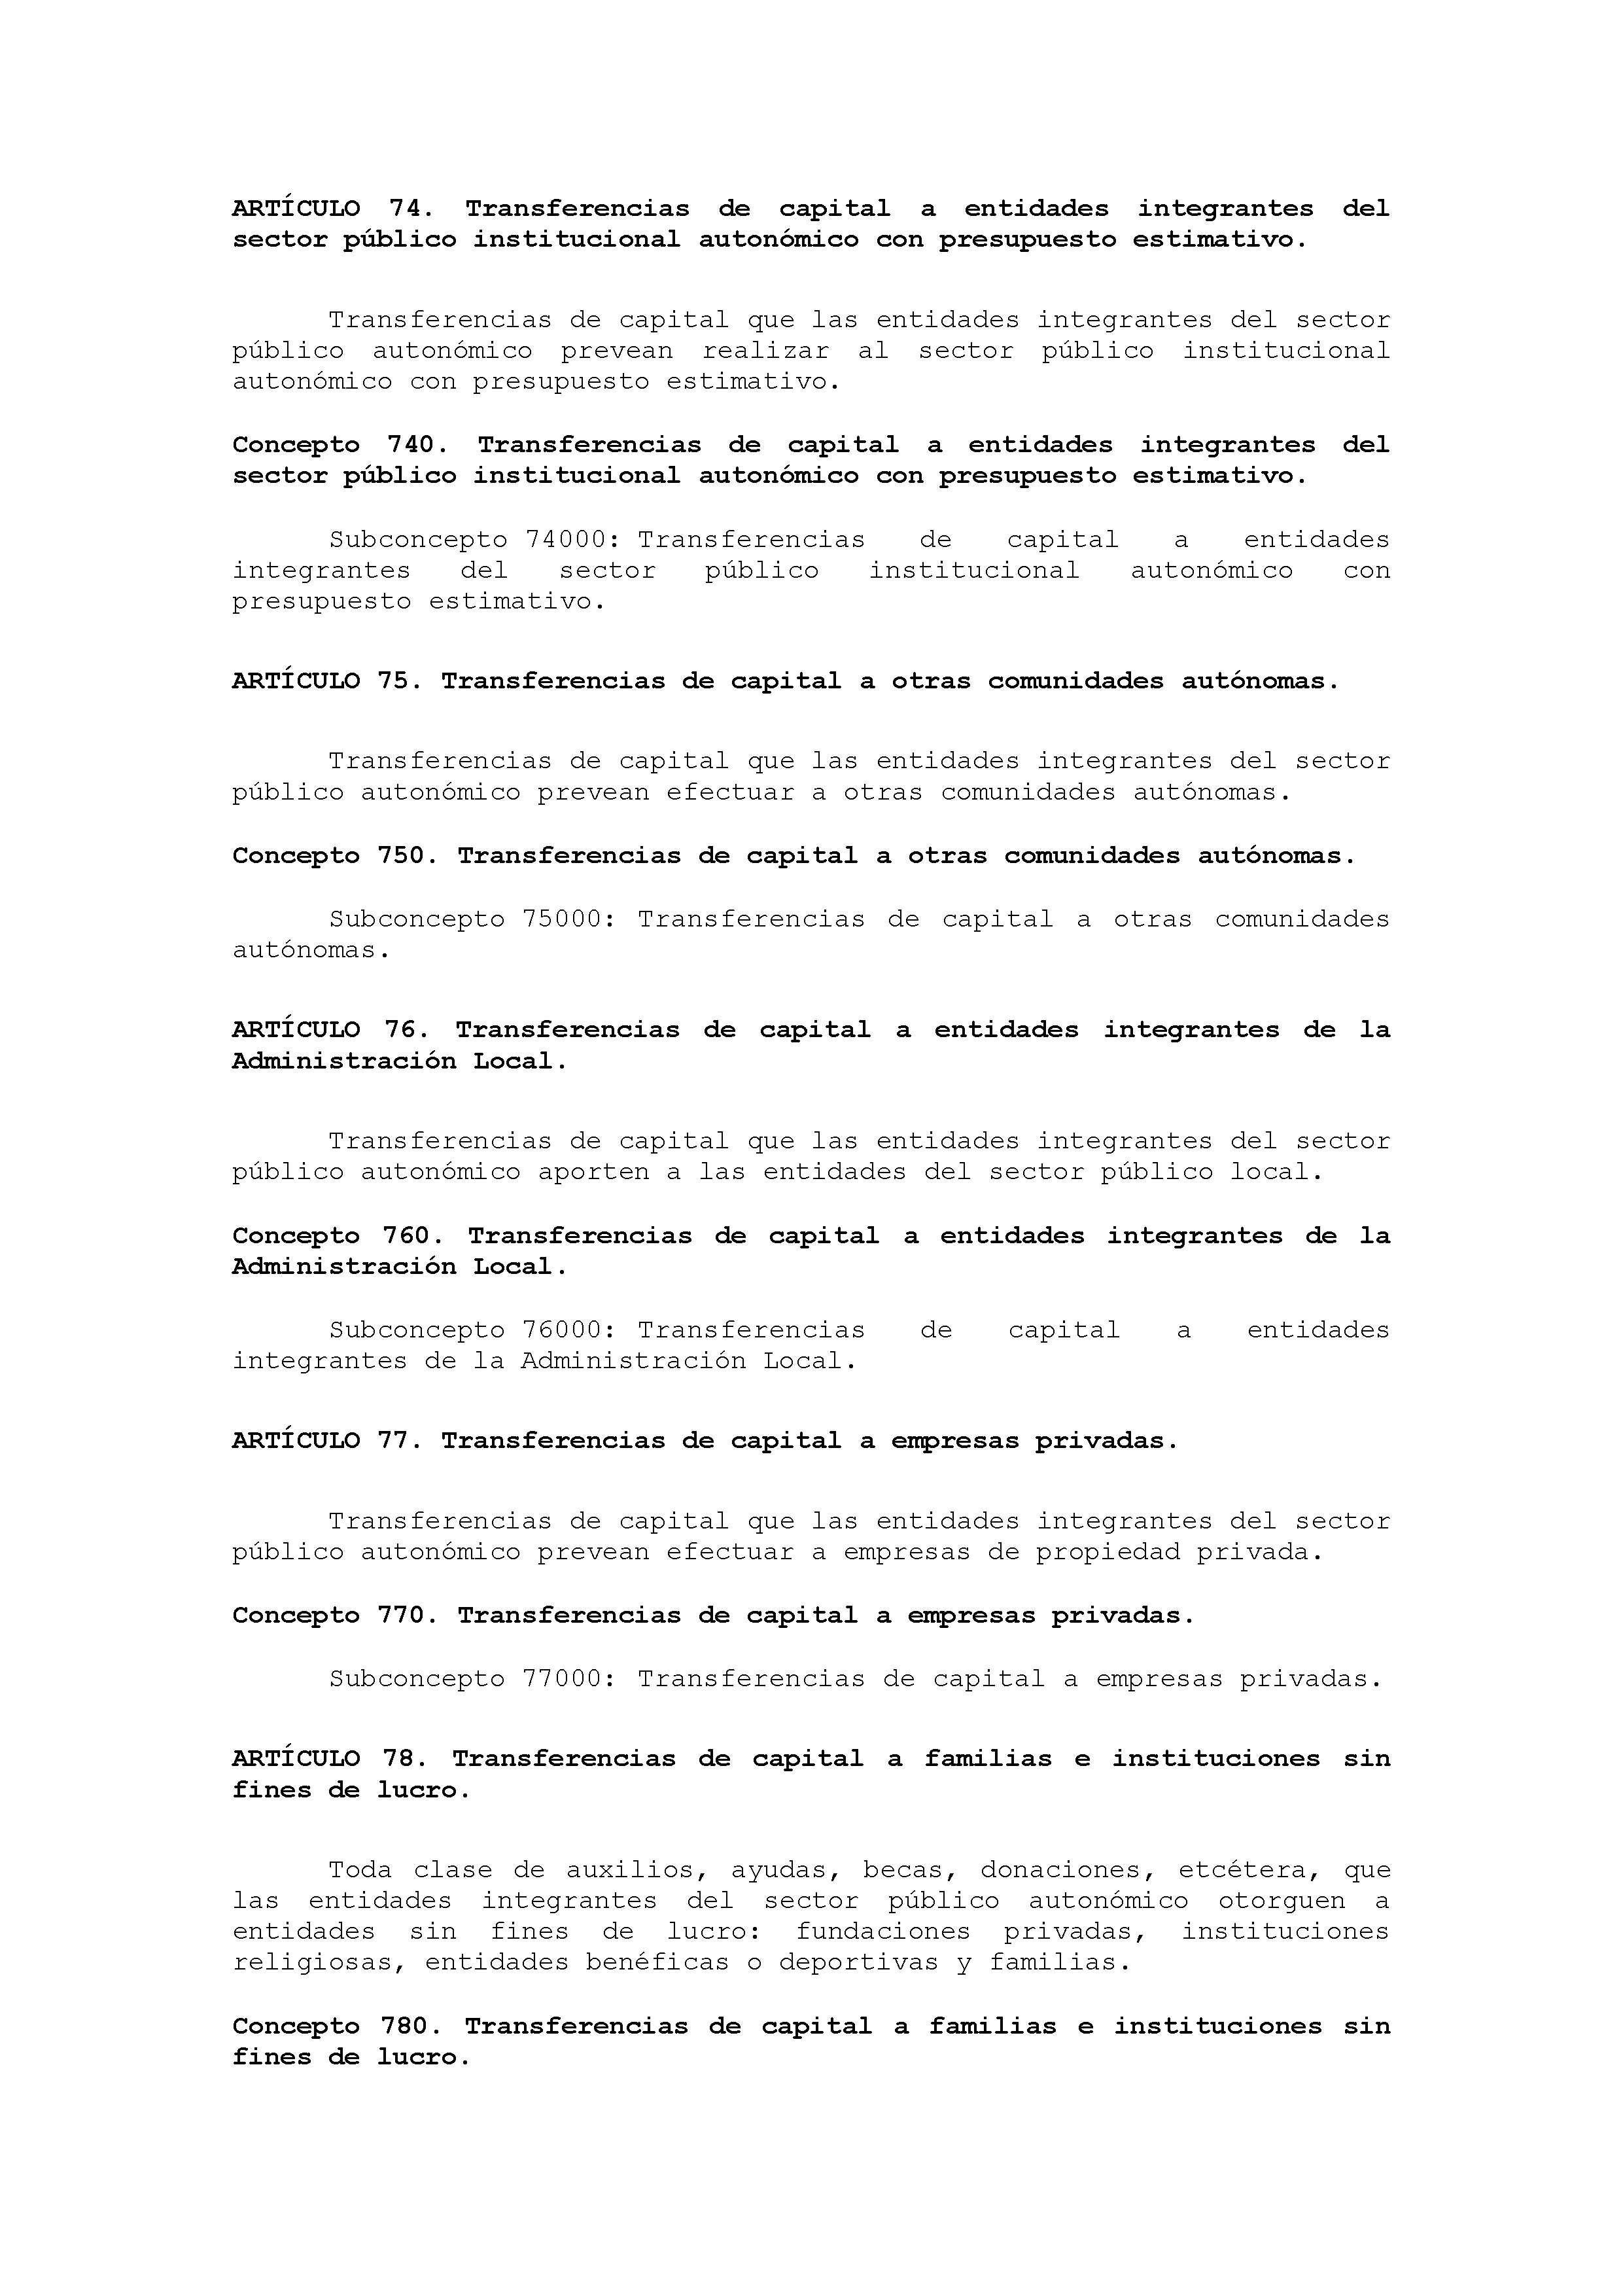 ANEXO IX CÓDIGO DE LA CLASIFICACIÓN ECONÓMICA DE LOS GASTOS PÚBLICOS Pag 42